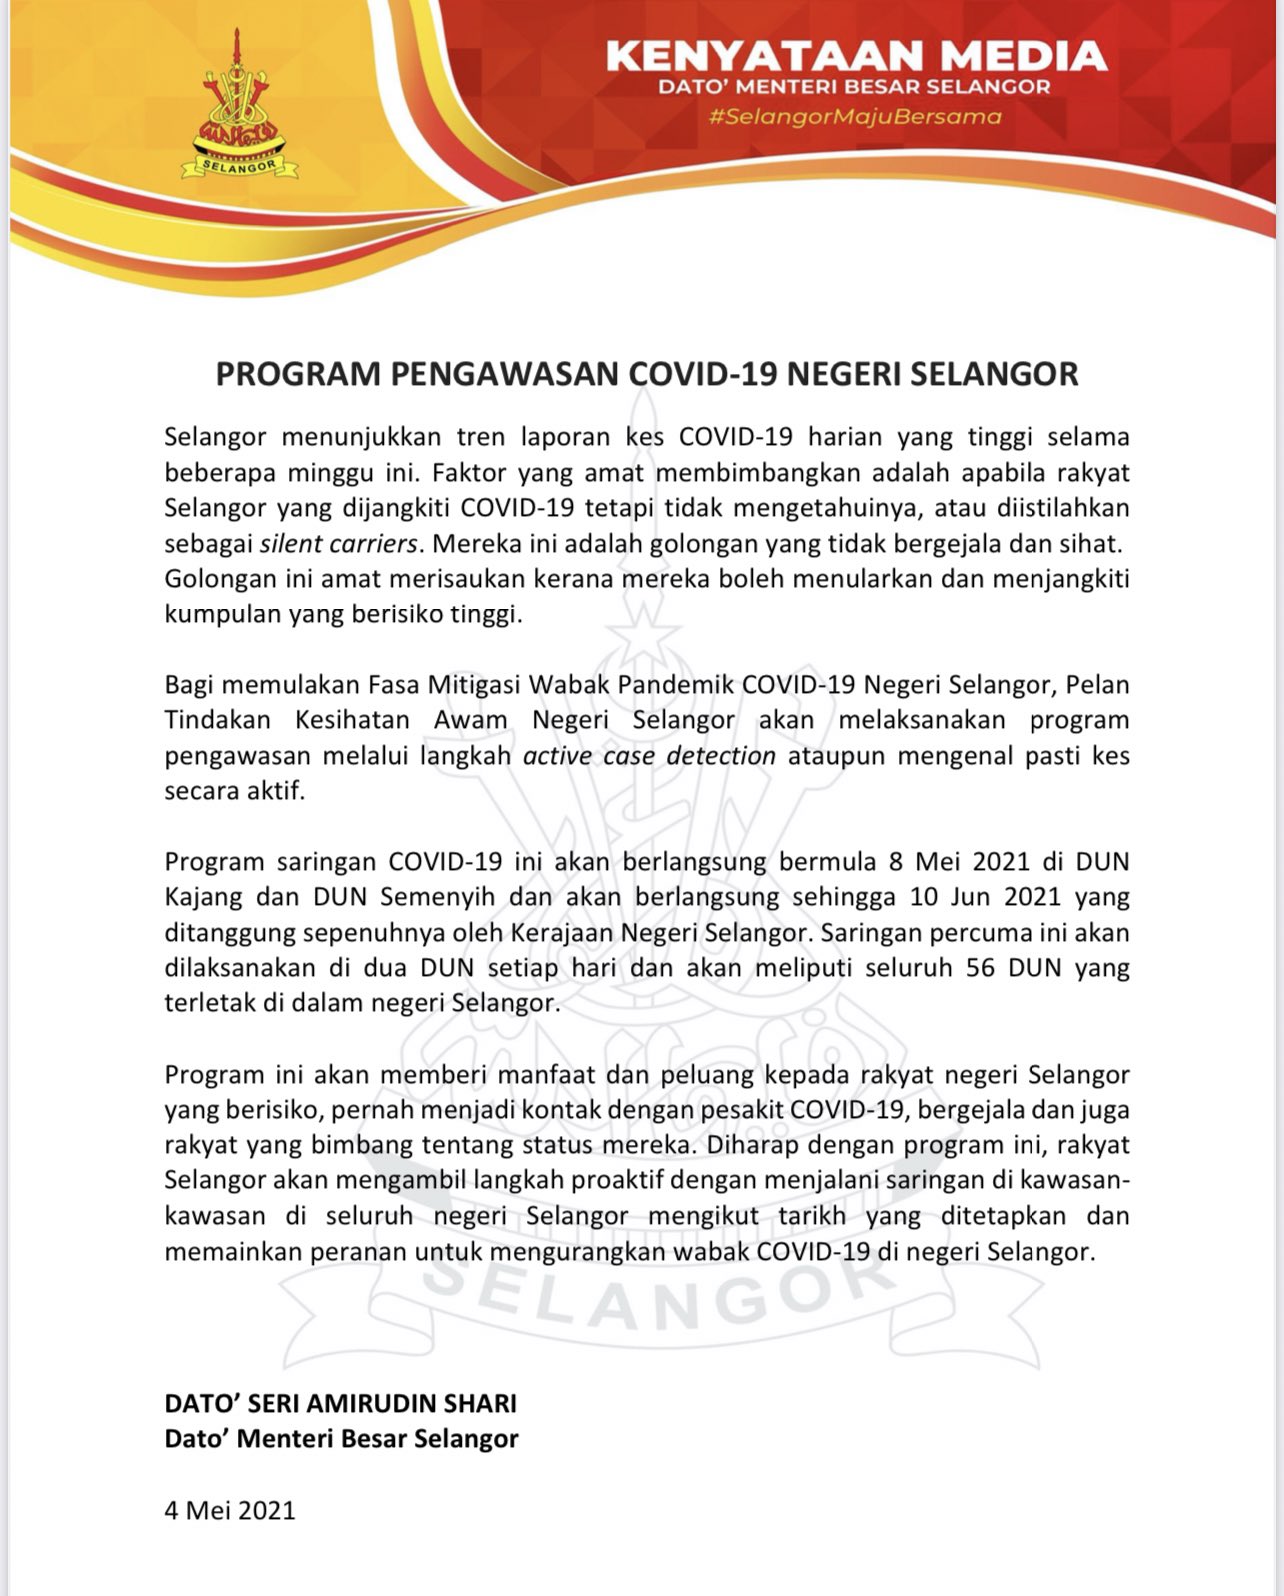 Ujian Saringan Covid-19 Percuma Untuk Warga Selangor Bermula 8 Mei